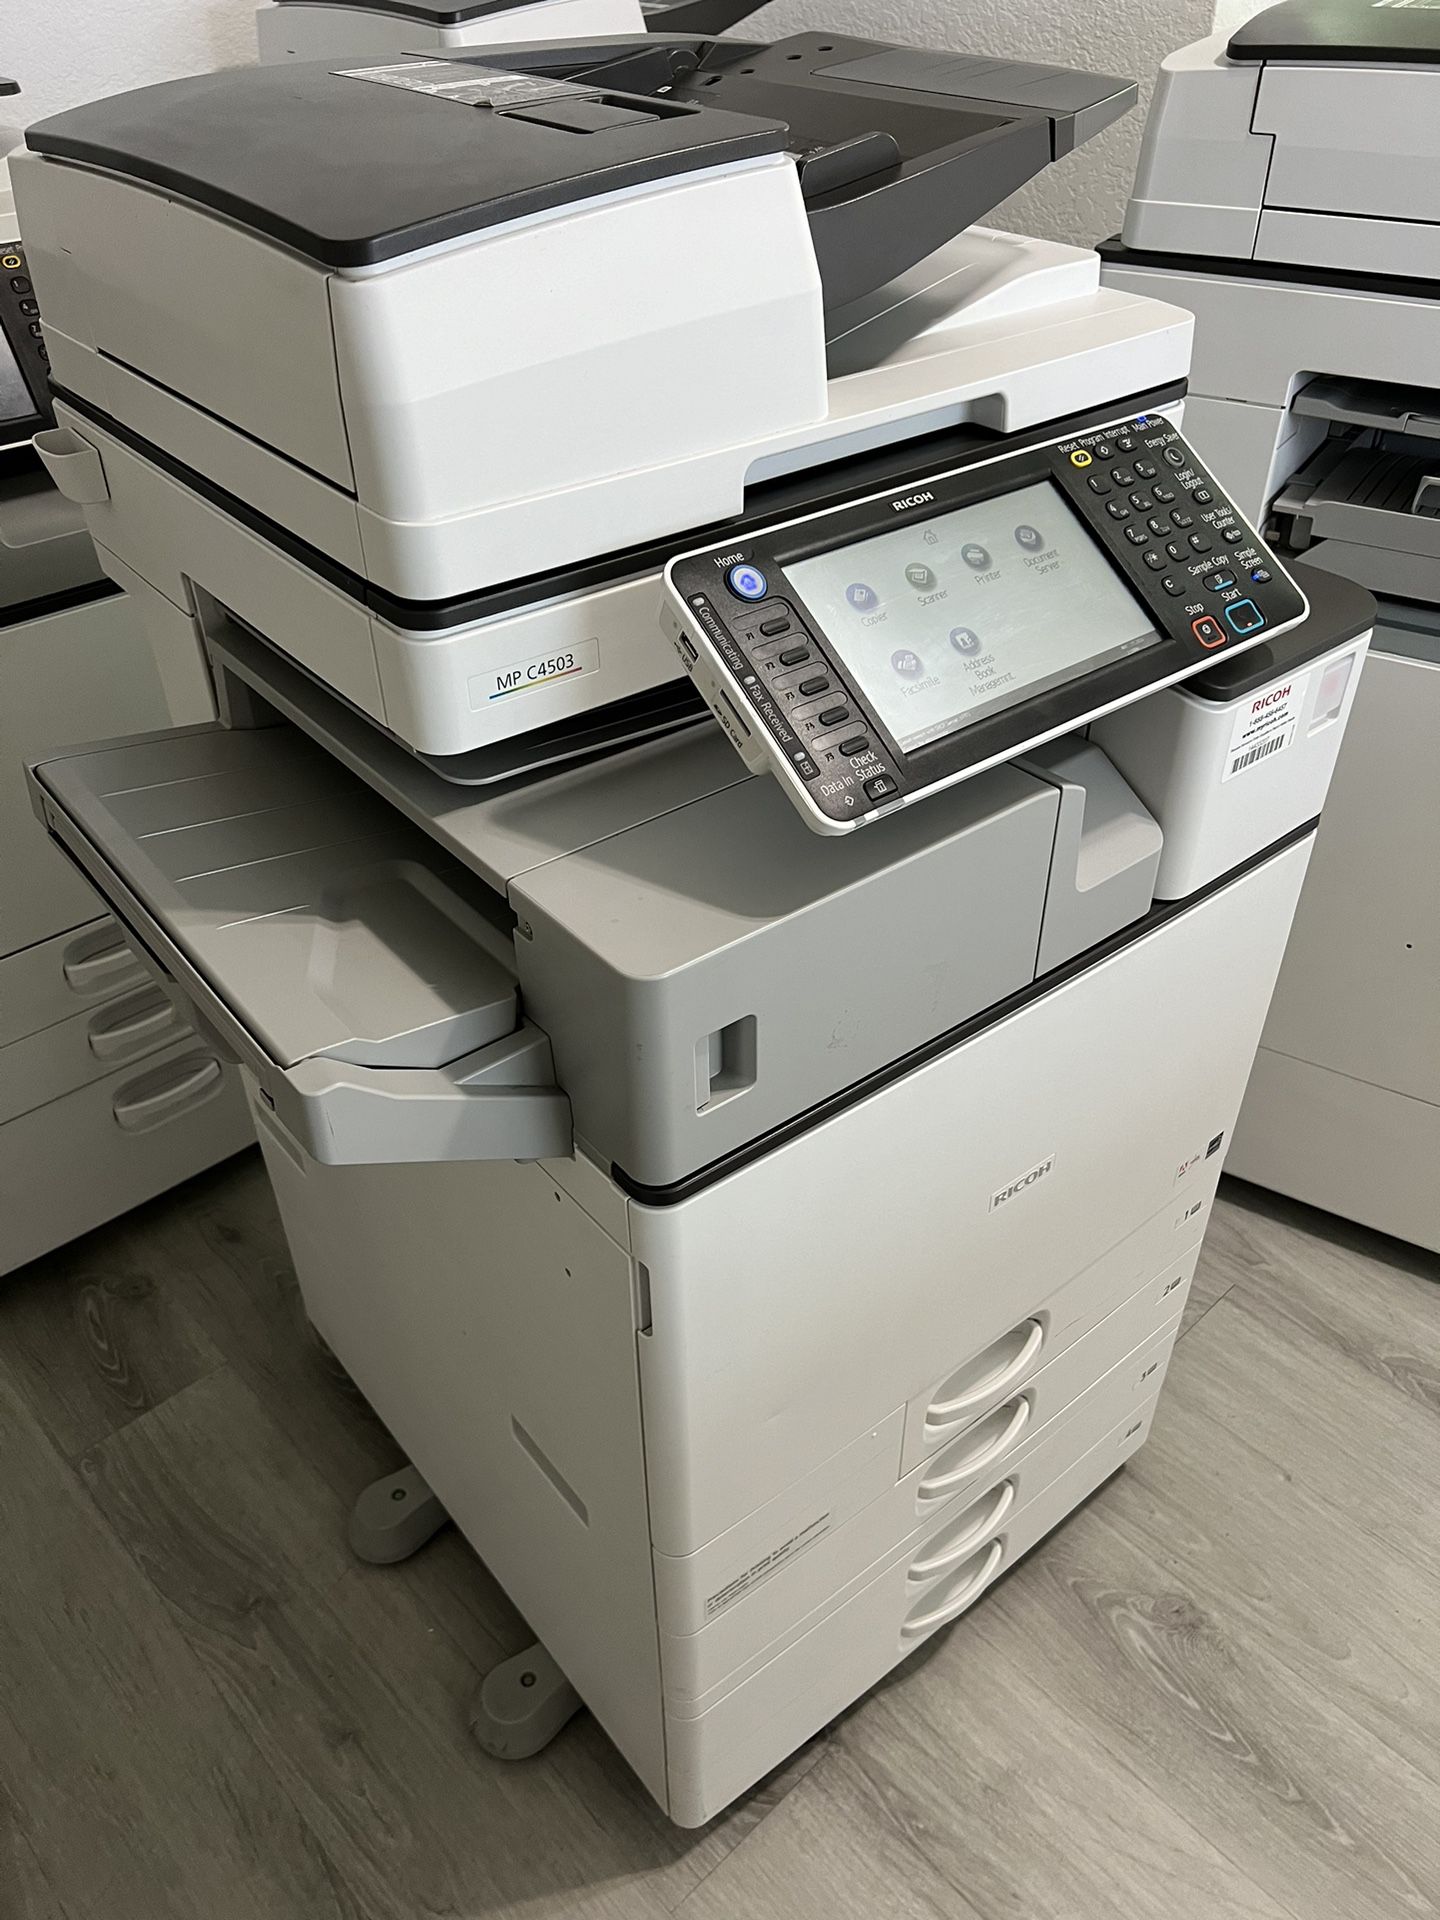 Office Copier Printer RICOH MP C4503